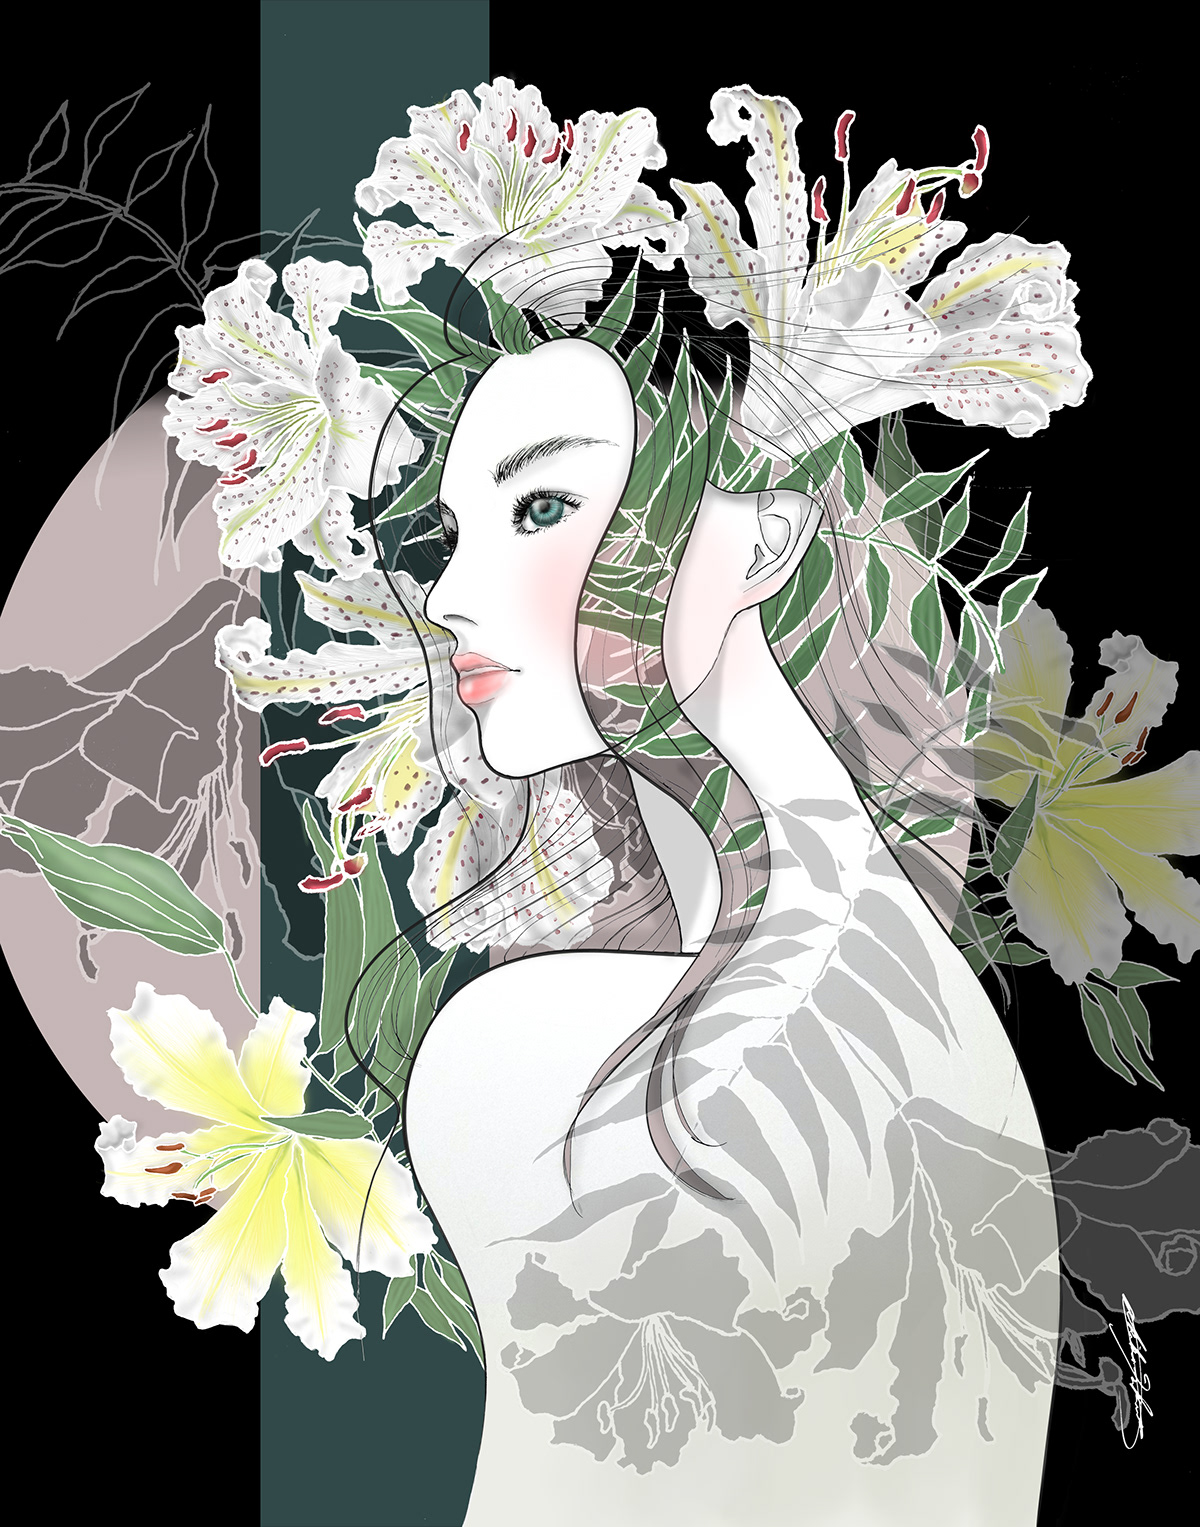 ILLUSTRATION  Digital Art  pattern design  portrait female figure floral pattern